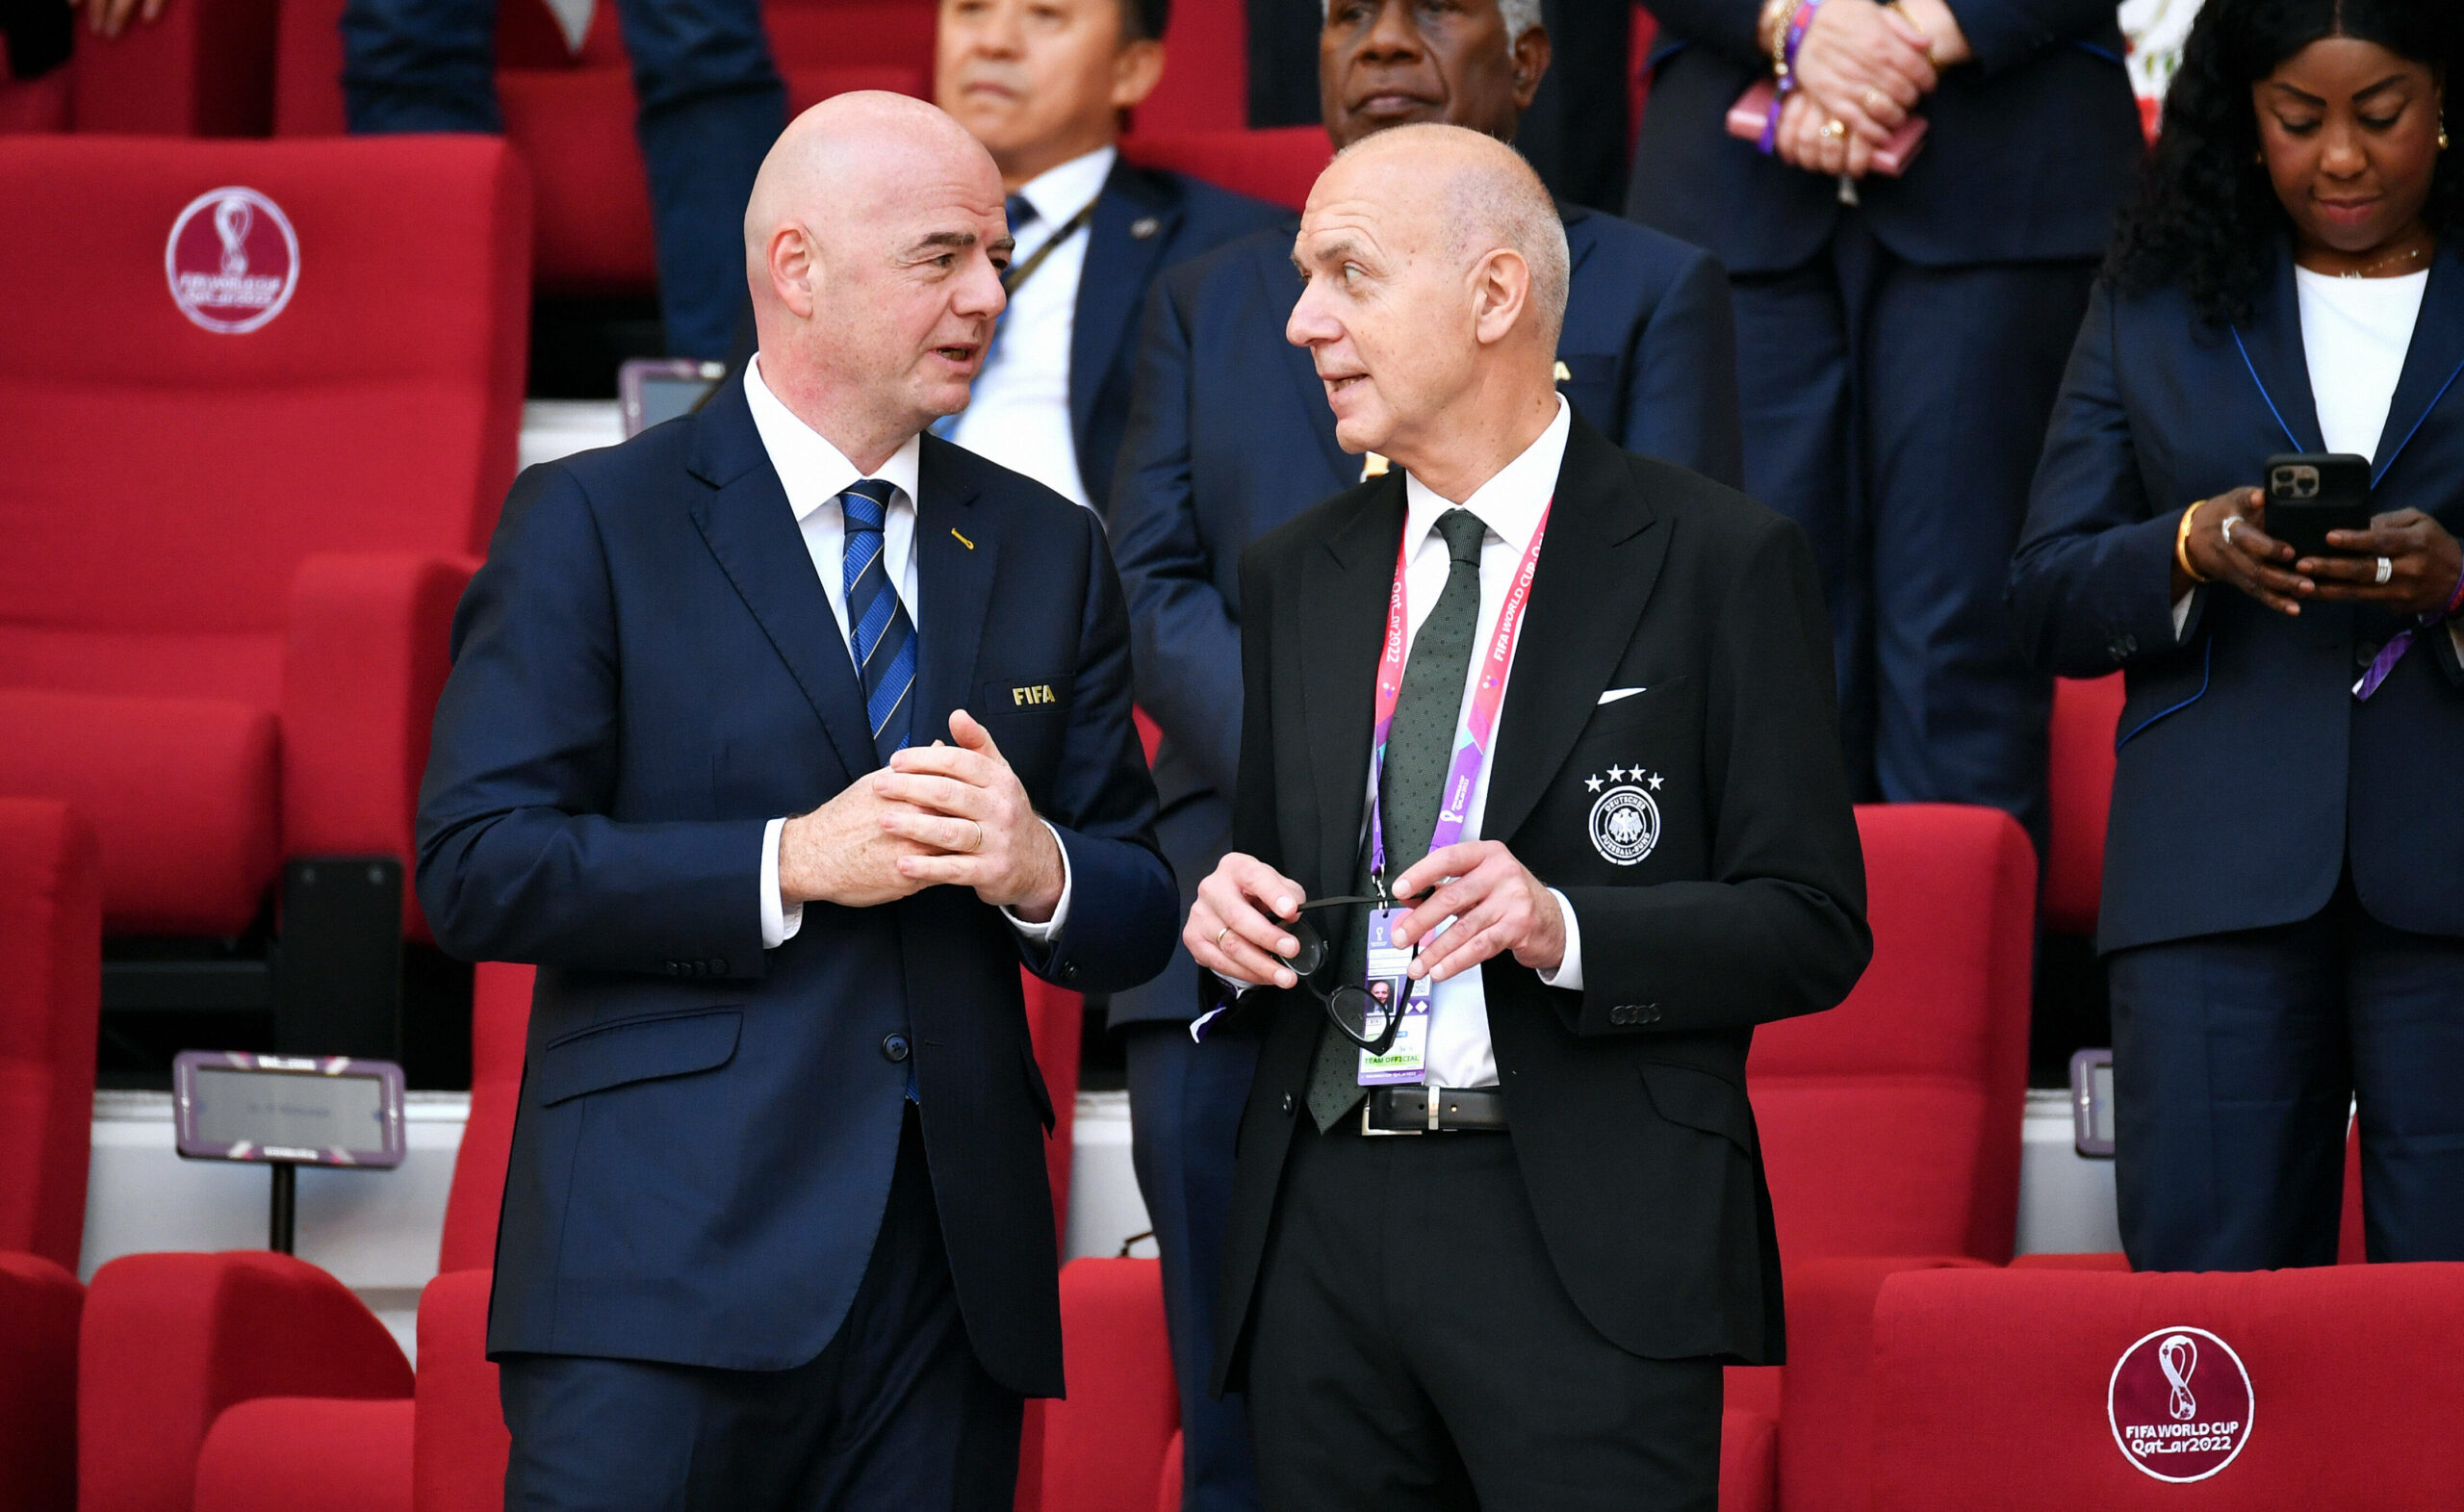 DFB-Präsident Bernd Neuendorf (rechts) im Gespräch mit FIFA-Chef Gianni Infantino (links)